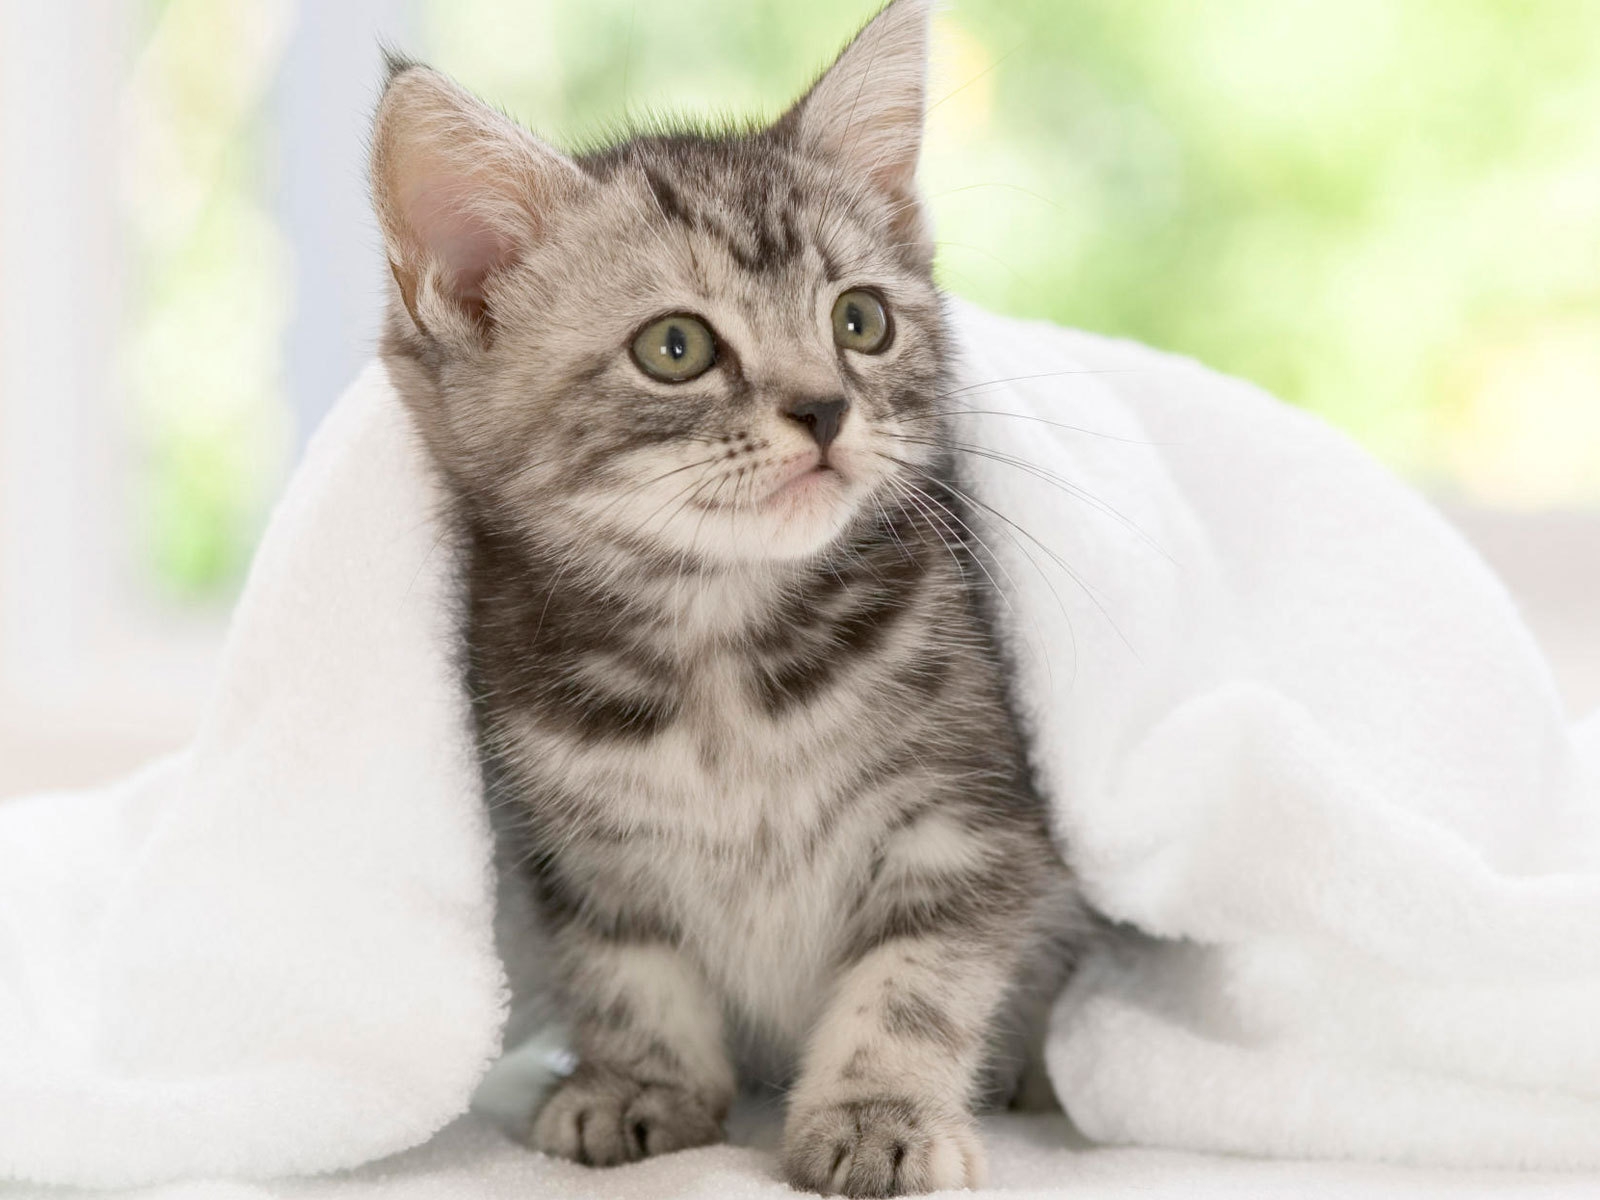 American Shorthair Kitten for 1600 x 1200 resolution